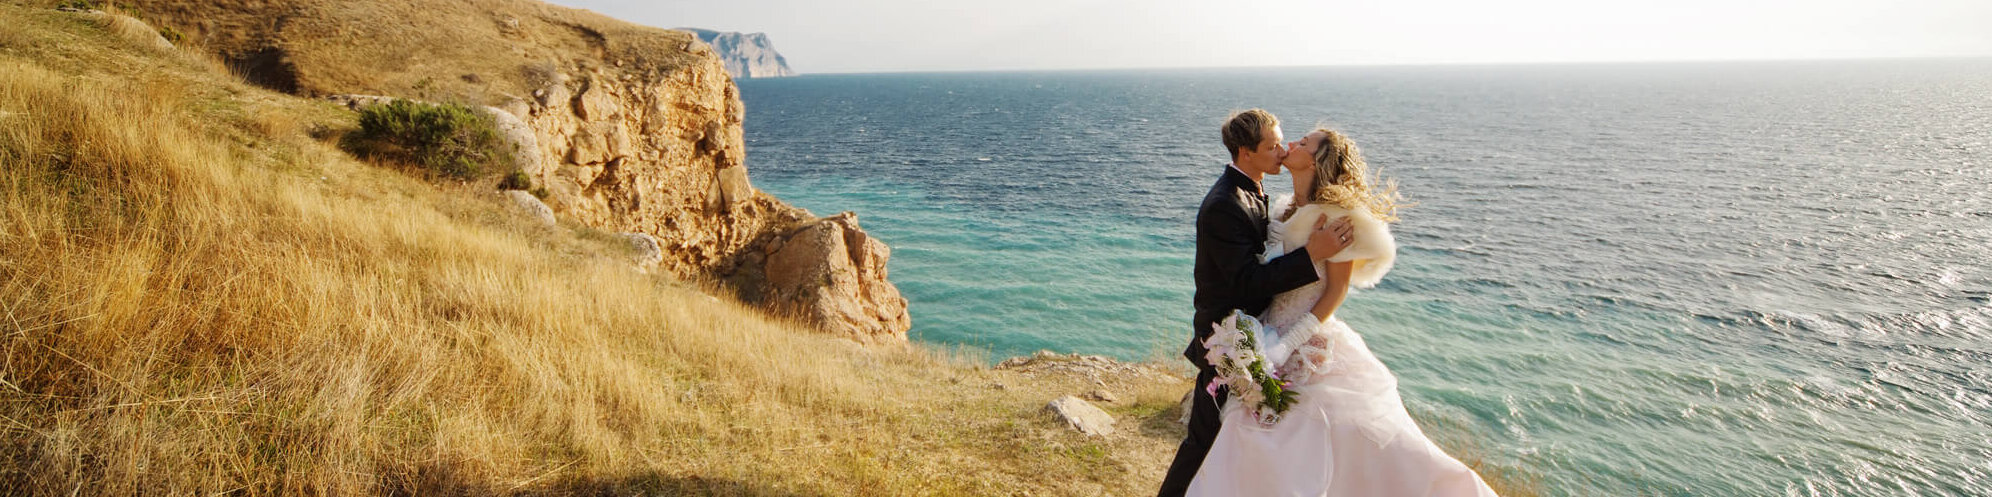 Hochzeit von A-Z -Heiraten am Meer